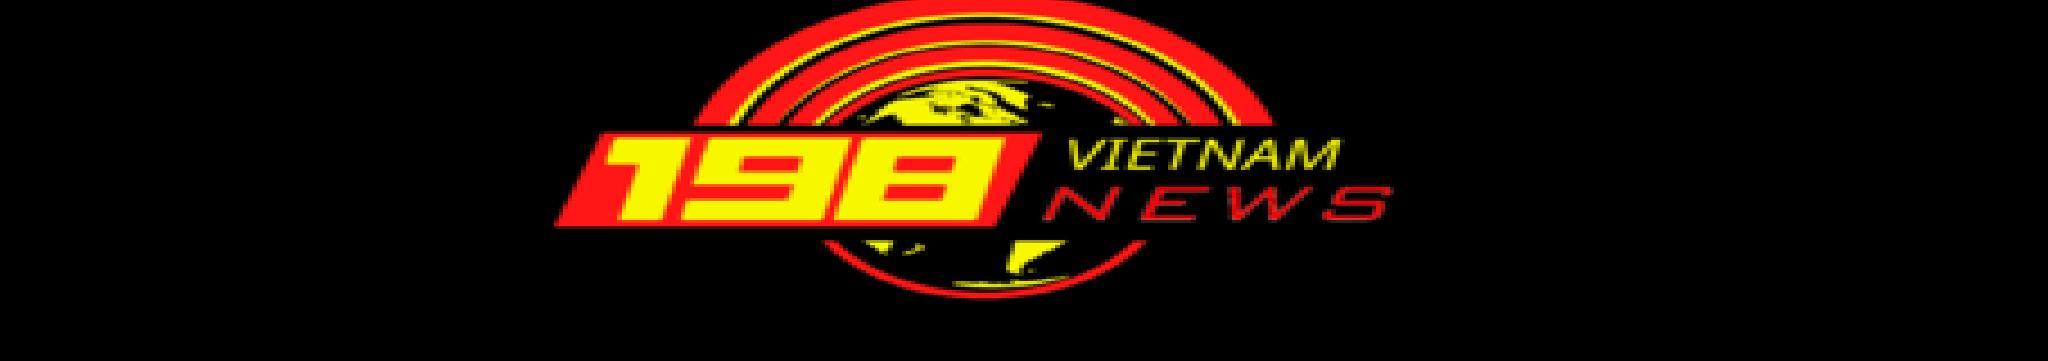 198 Vietnam News 的個人檔案橫幅